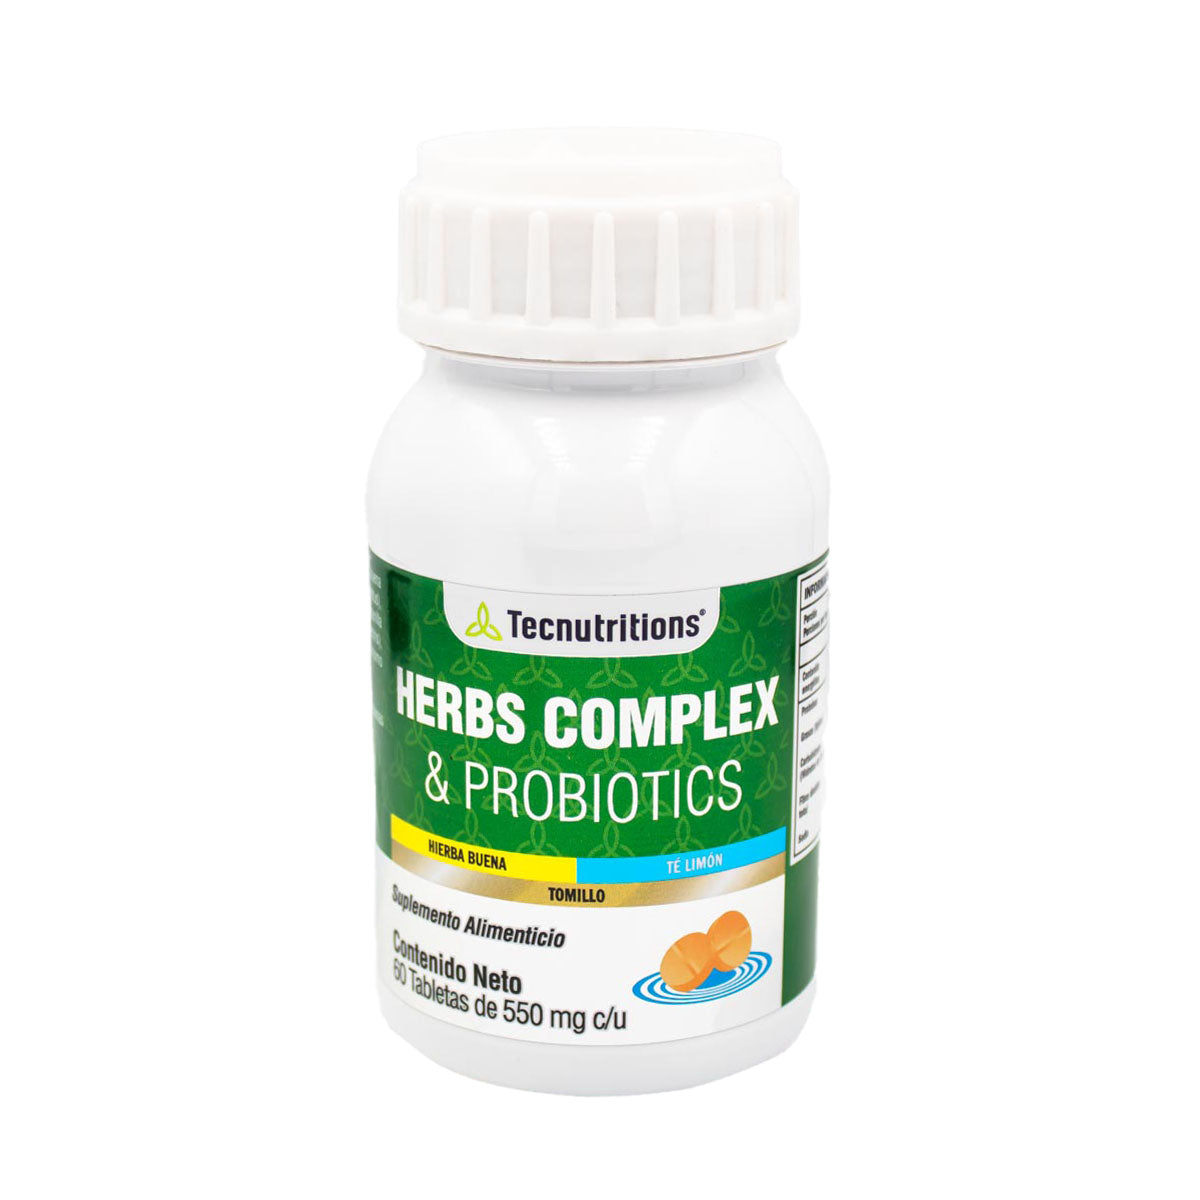 Suplemento alimenticio Herb Complex & Probiotics, 60 tabs, con hierba buena, lactobacilos, salud gastrointestinal